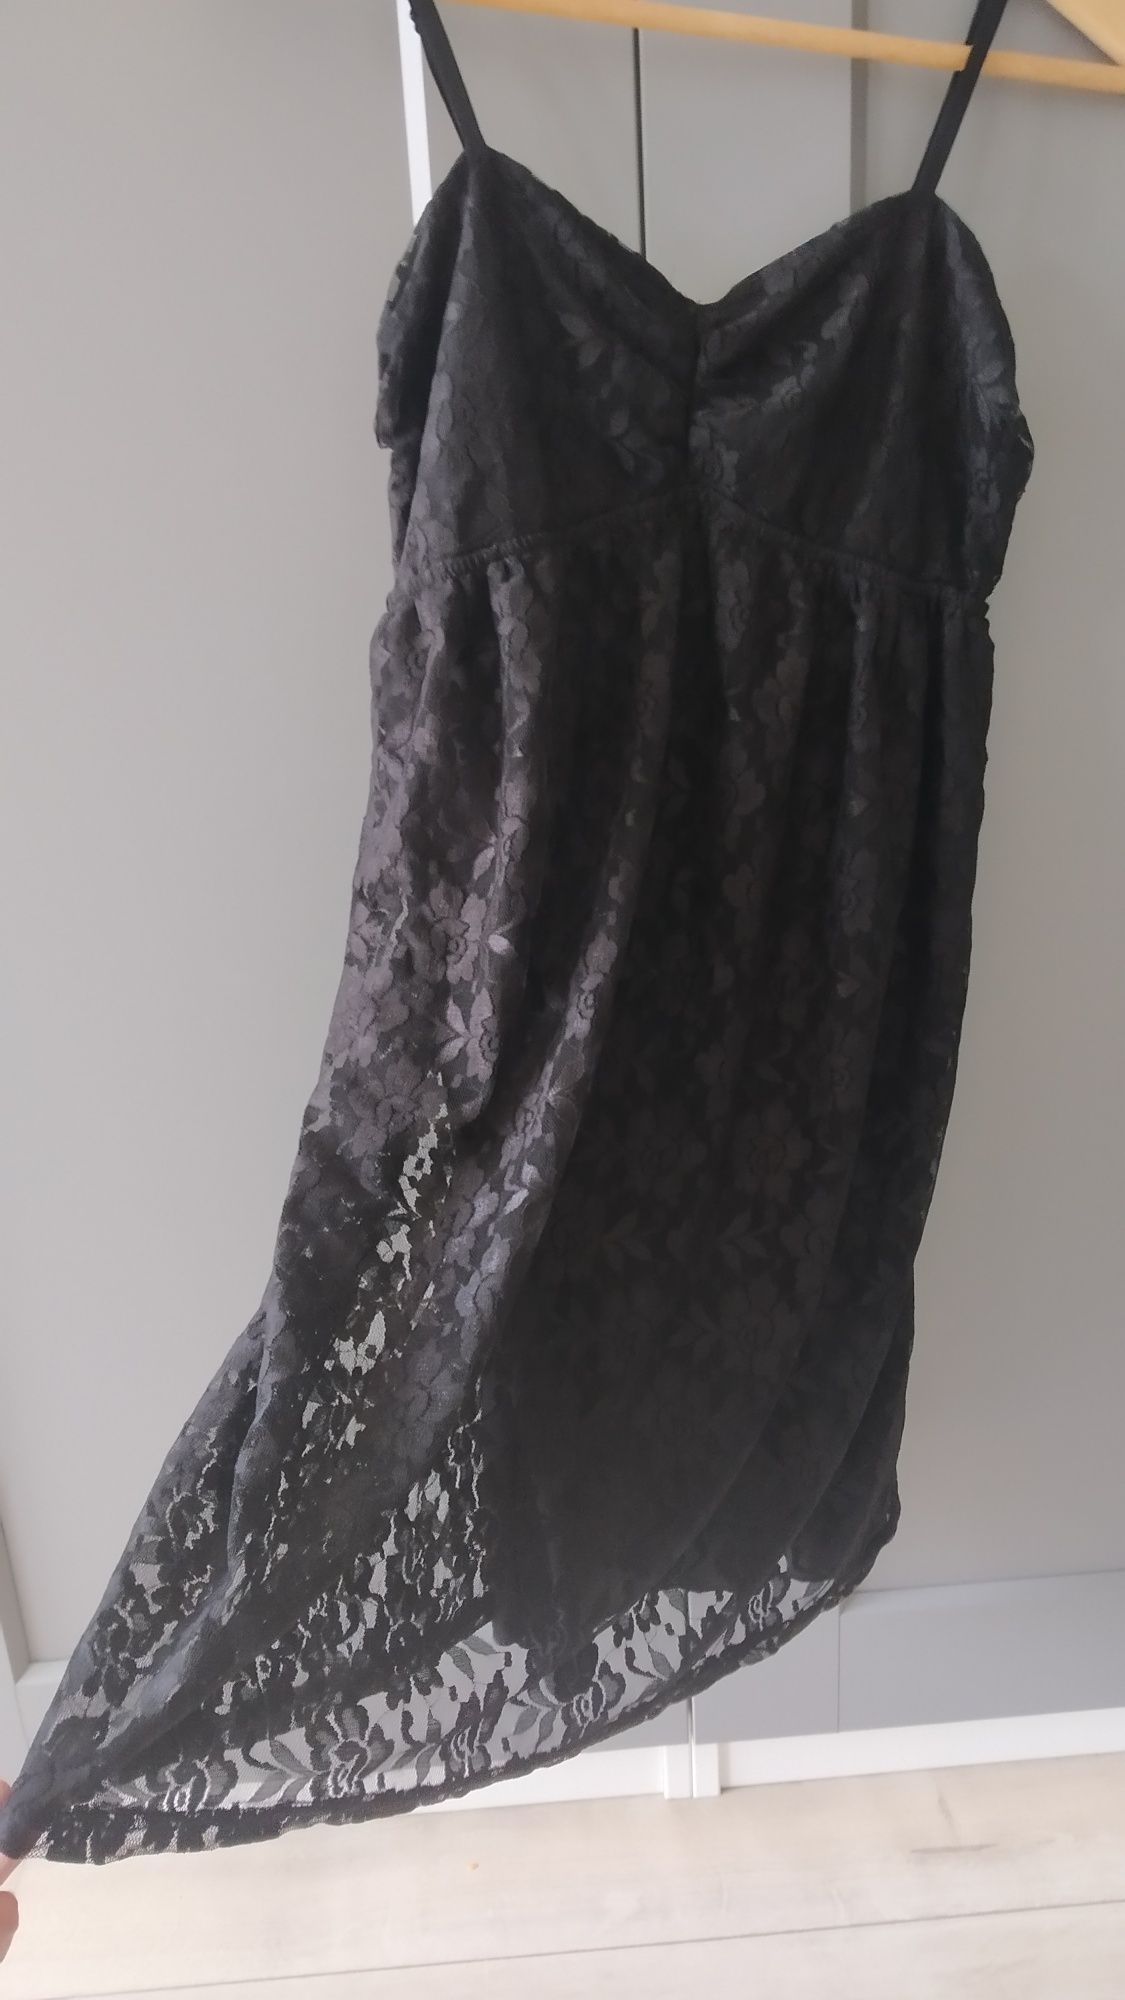 Nowa czarna sukienka tunika koronkowa odcinana M 38 z metką